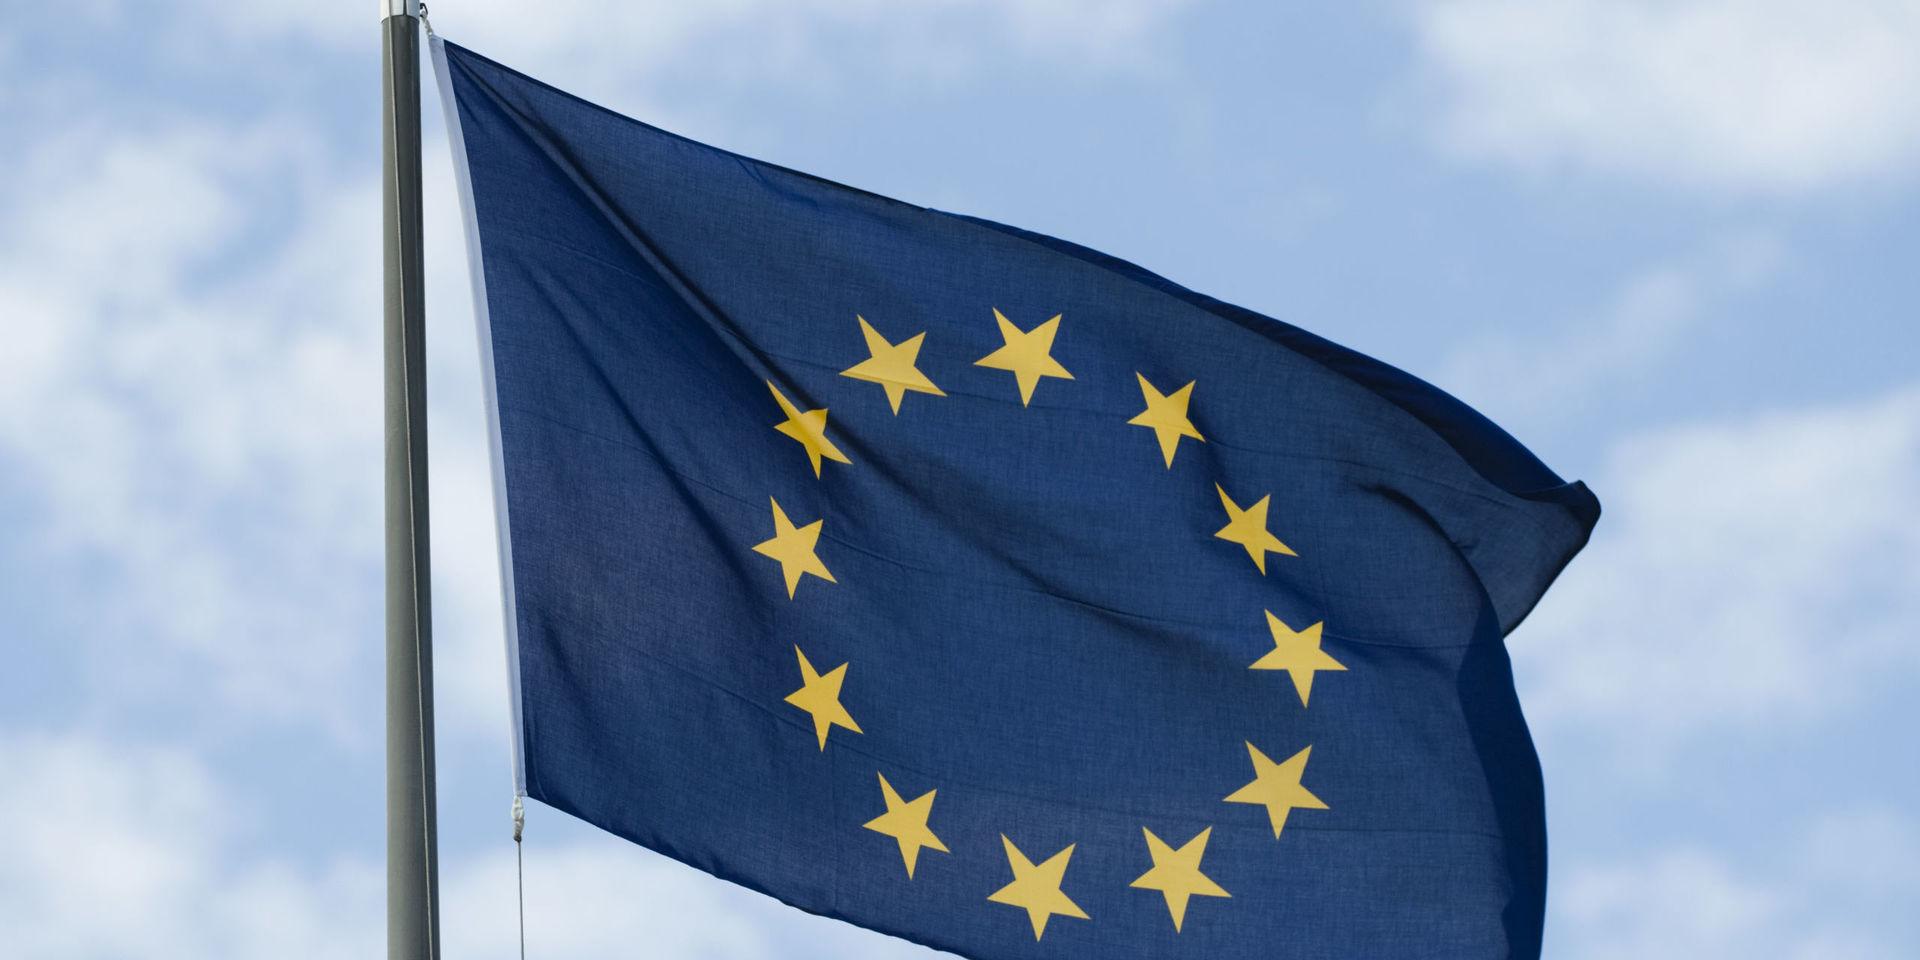 Rösta för ett demokratiskt Europa, uppmanar insändarskribenten.